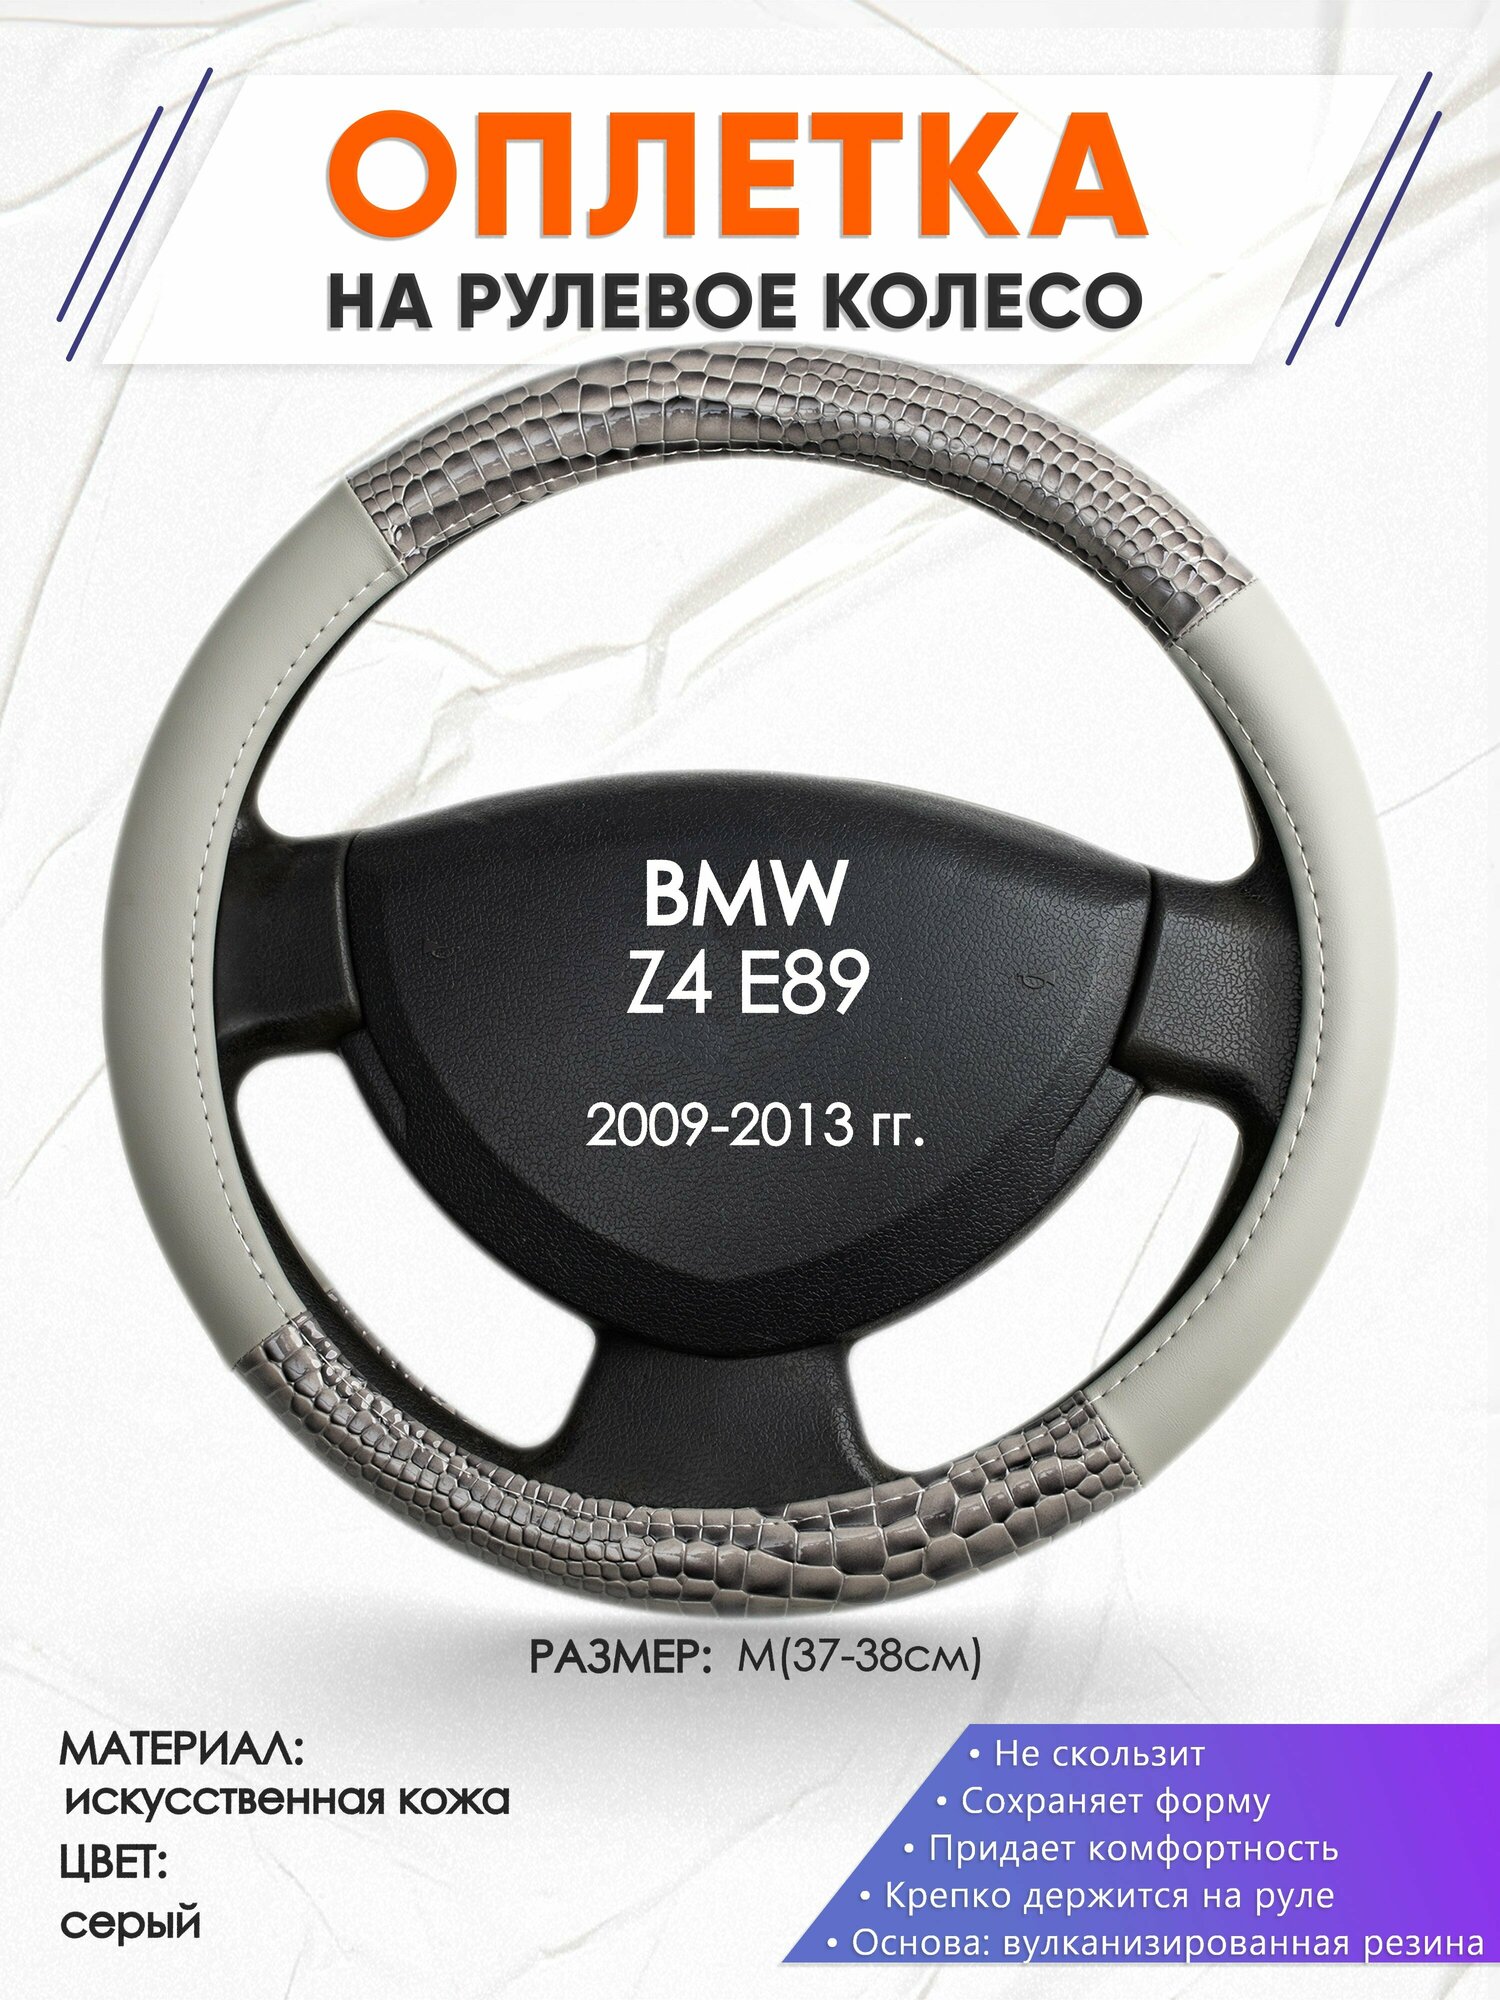 Оплетка наруль для BMW Z4 E89(Бмв зет4 Е89) 2009-2013 годов выпуска, размер M(37-38см), Искусственная кожа 84